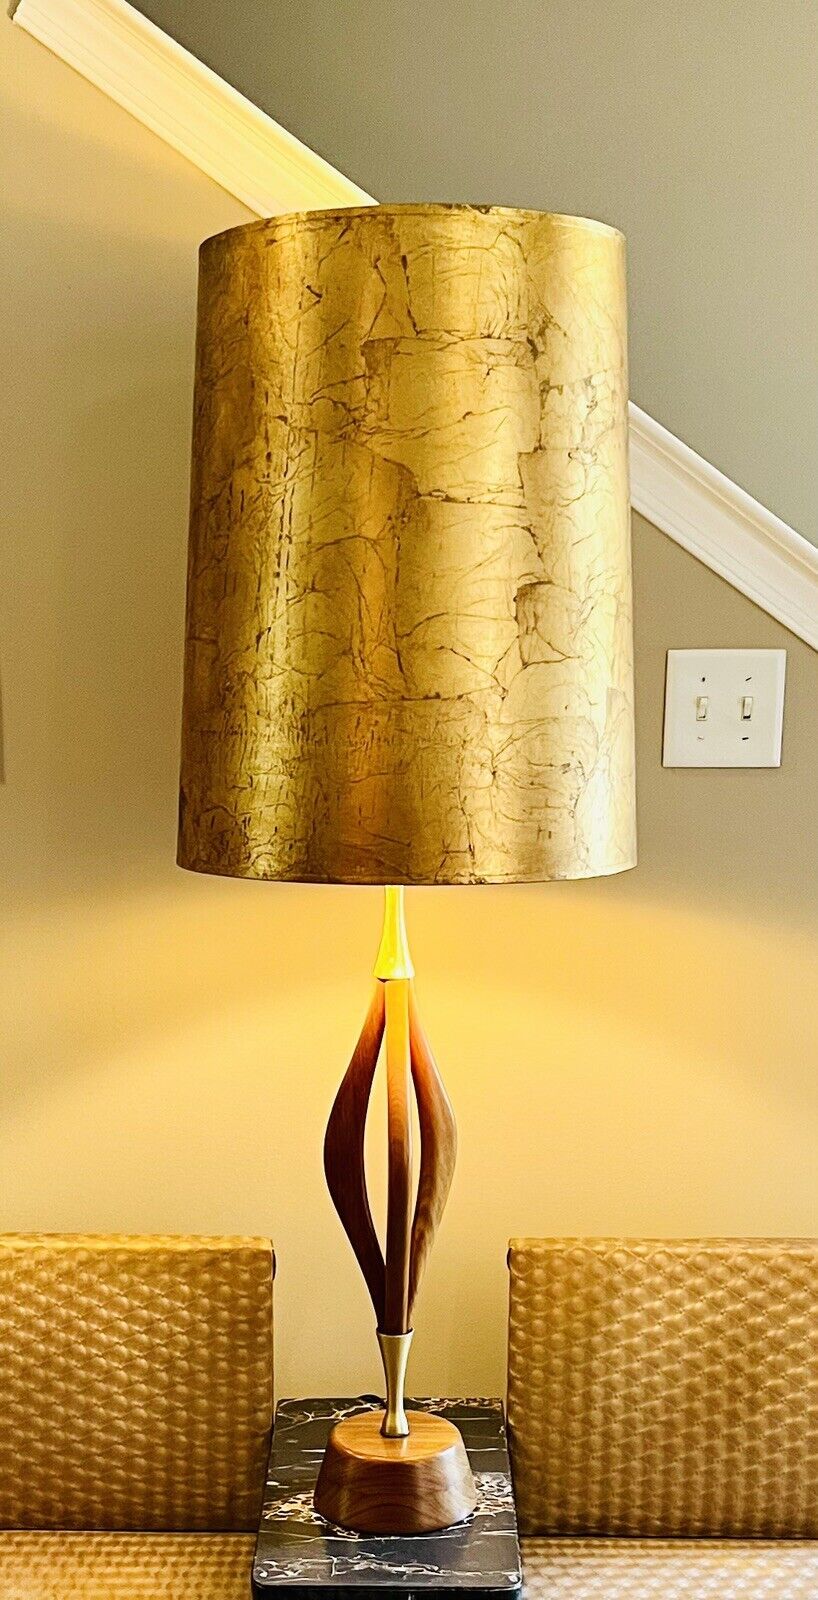 VTG Danish Modern MCM Sculptural Teak/Brass Table Lamp w/Gold Leaf Shade -Huge